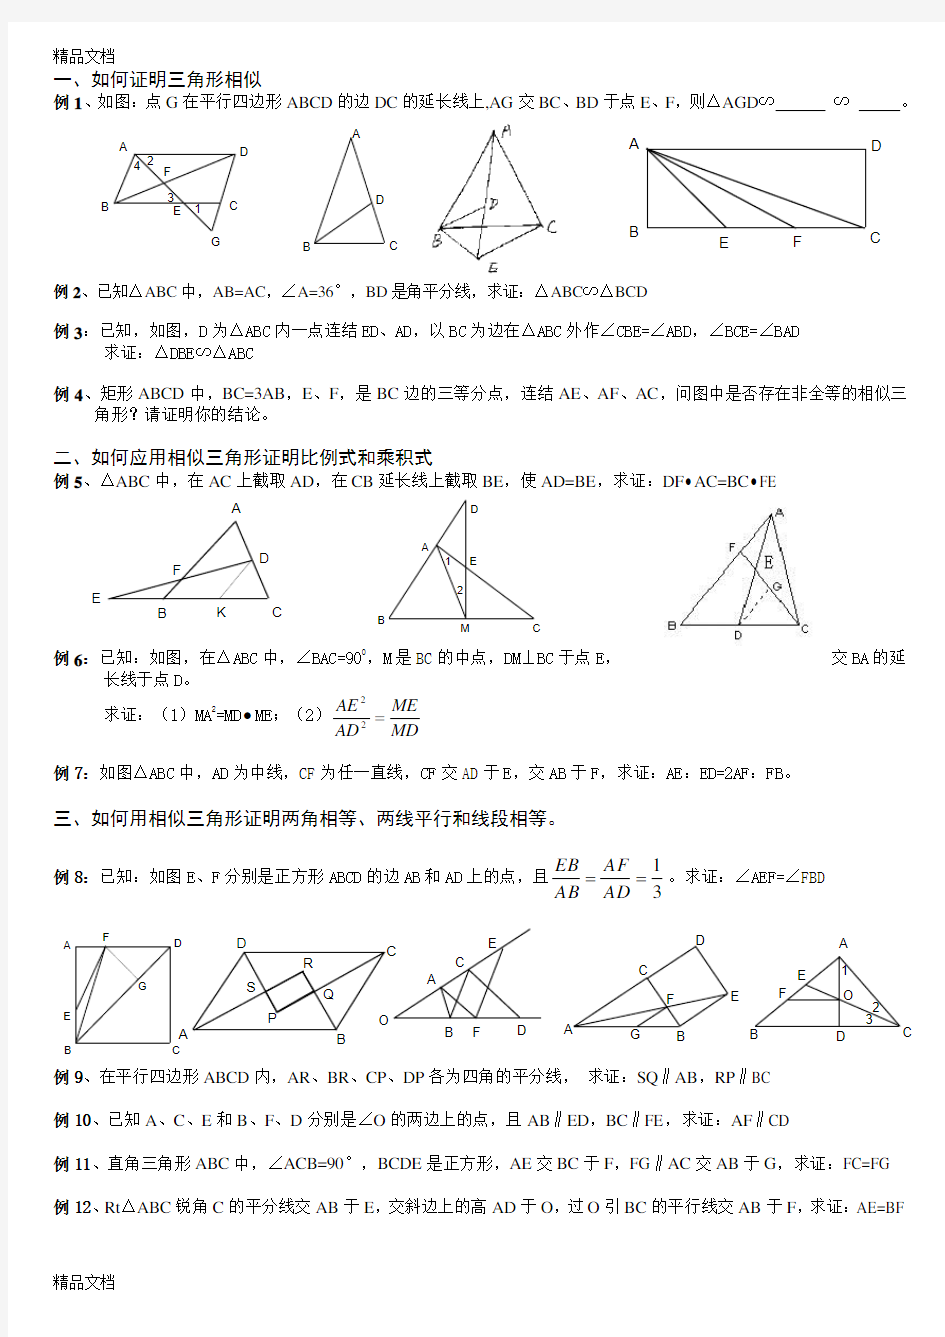 最新相似三角形经典例题解析